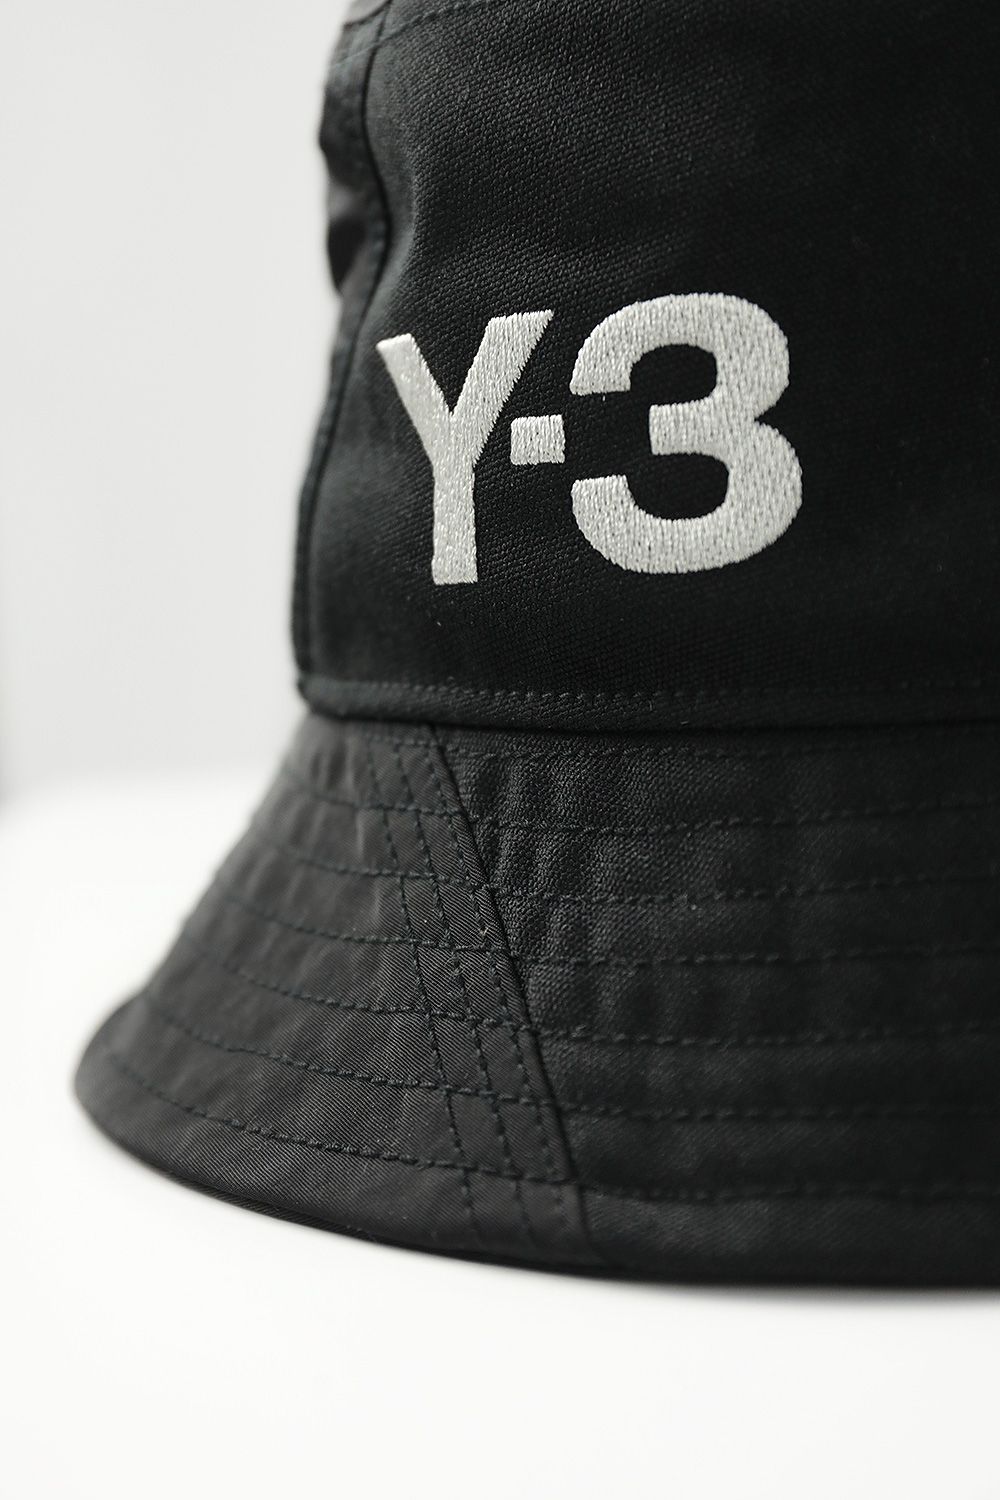 Y-3 - Y-3 BUCKET HAT(BLACK) | Acacia ONLINESTORE